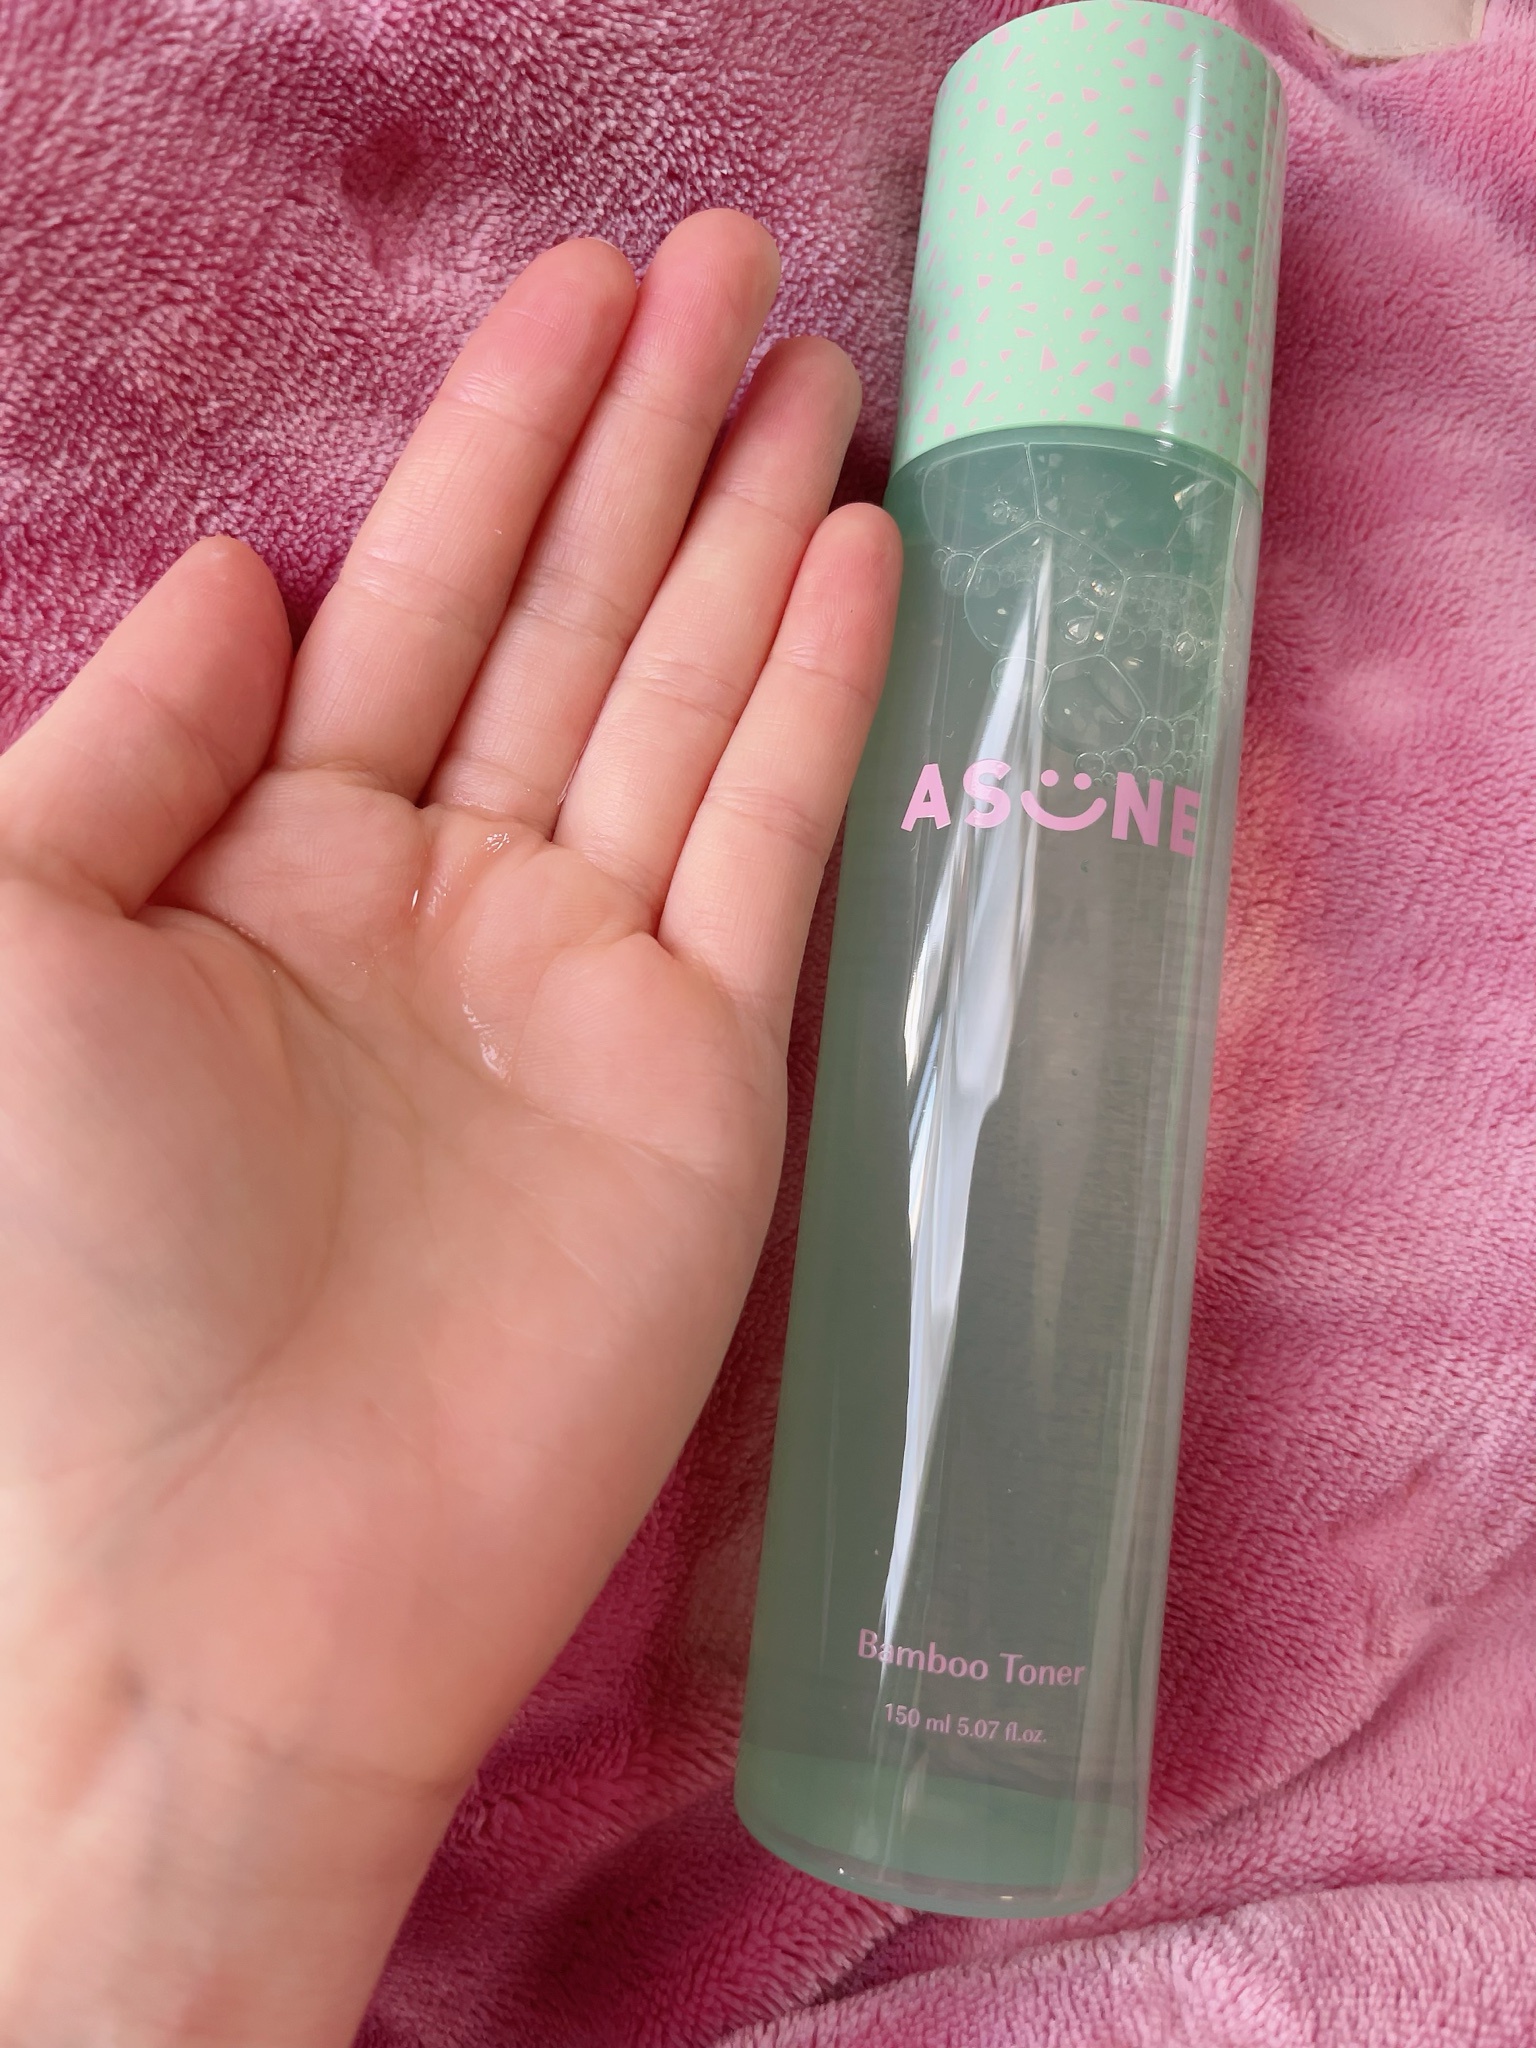 ASUNE / Bamboo Tonerの公式商品情報｜美容・化粧品情報はアットコスメ